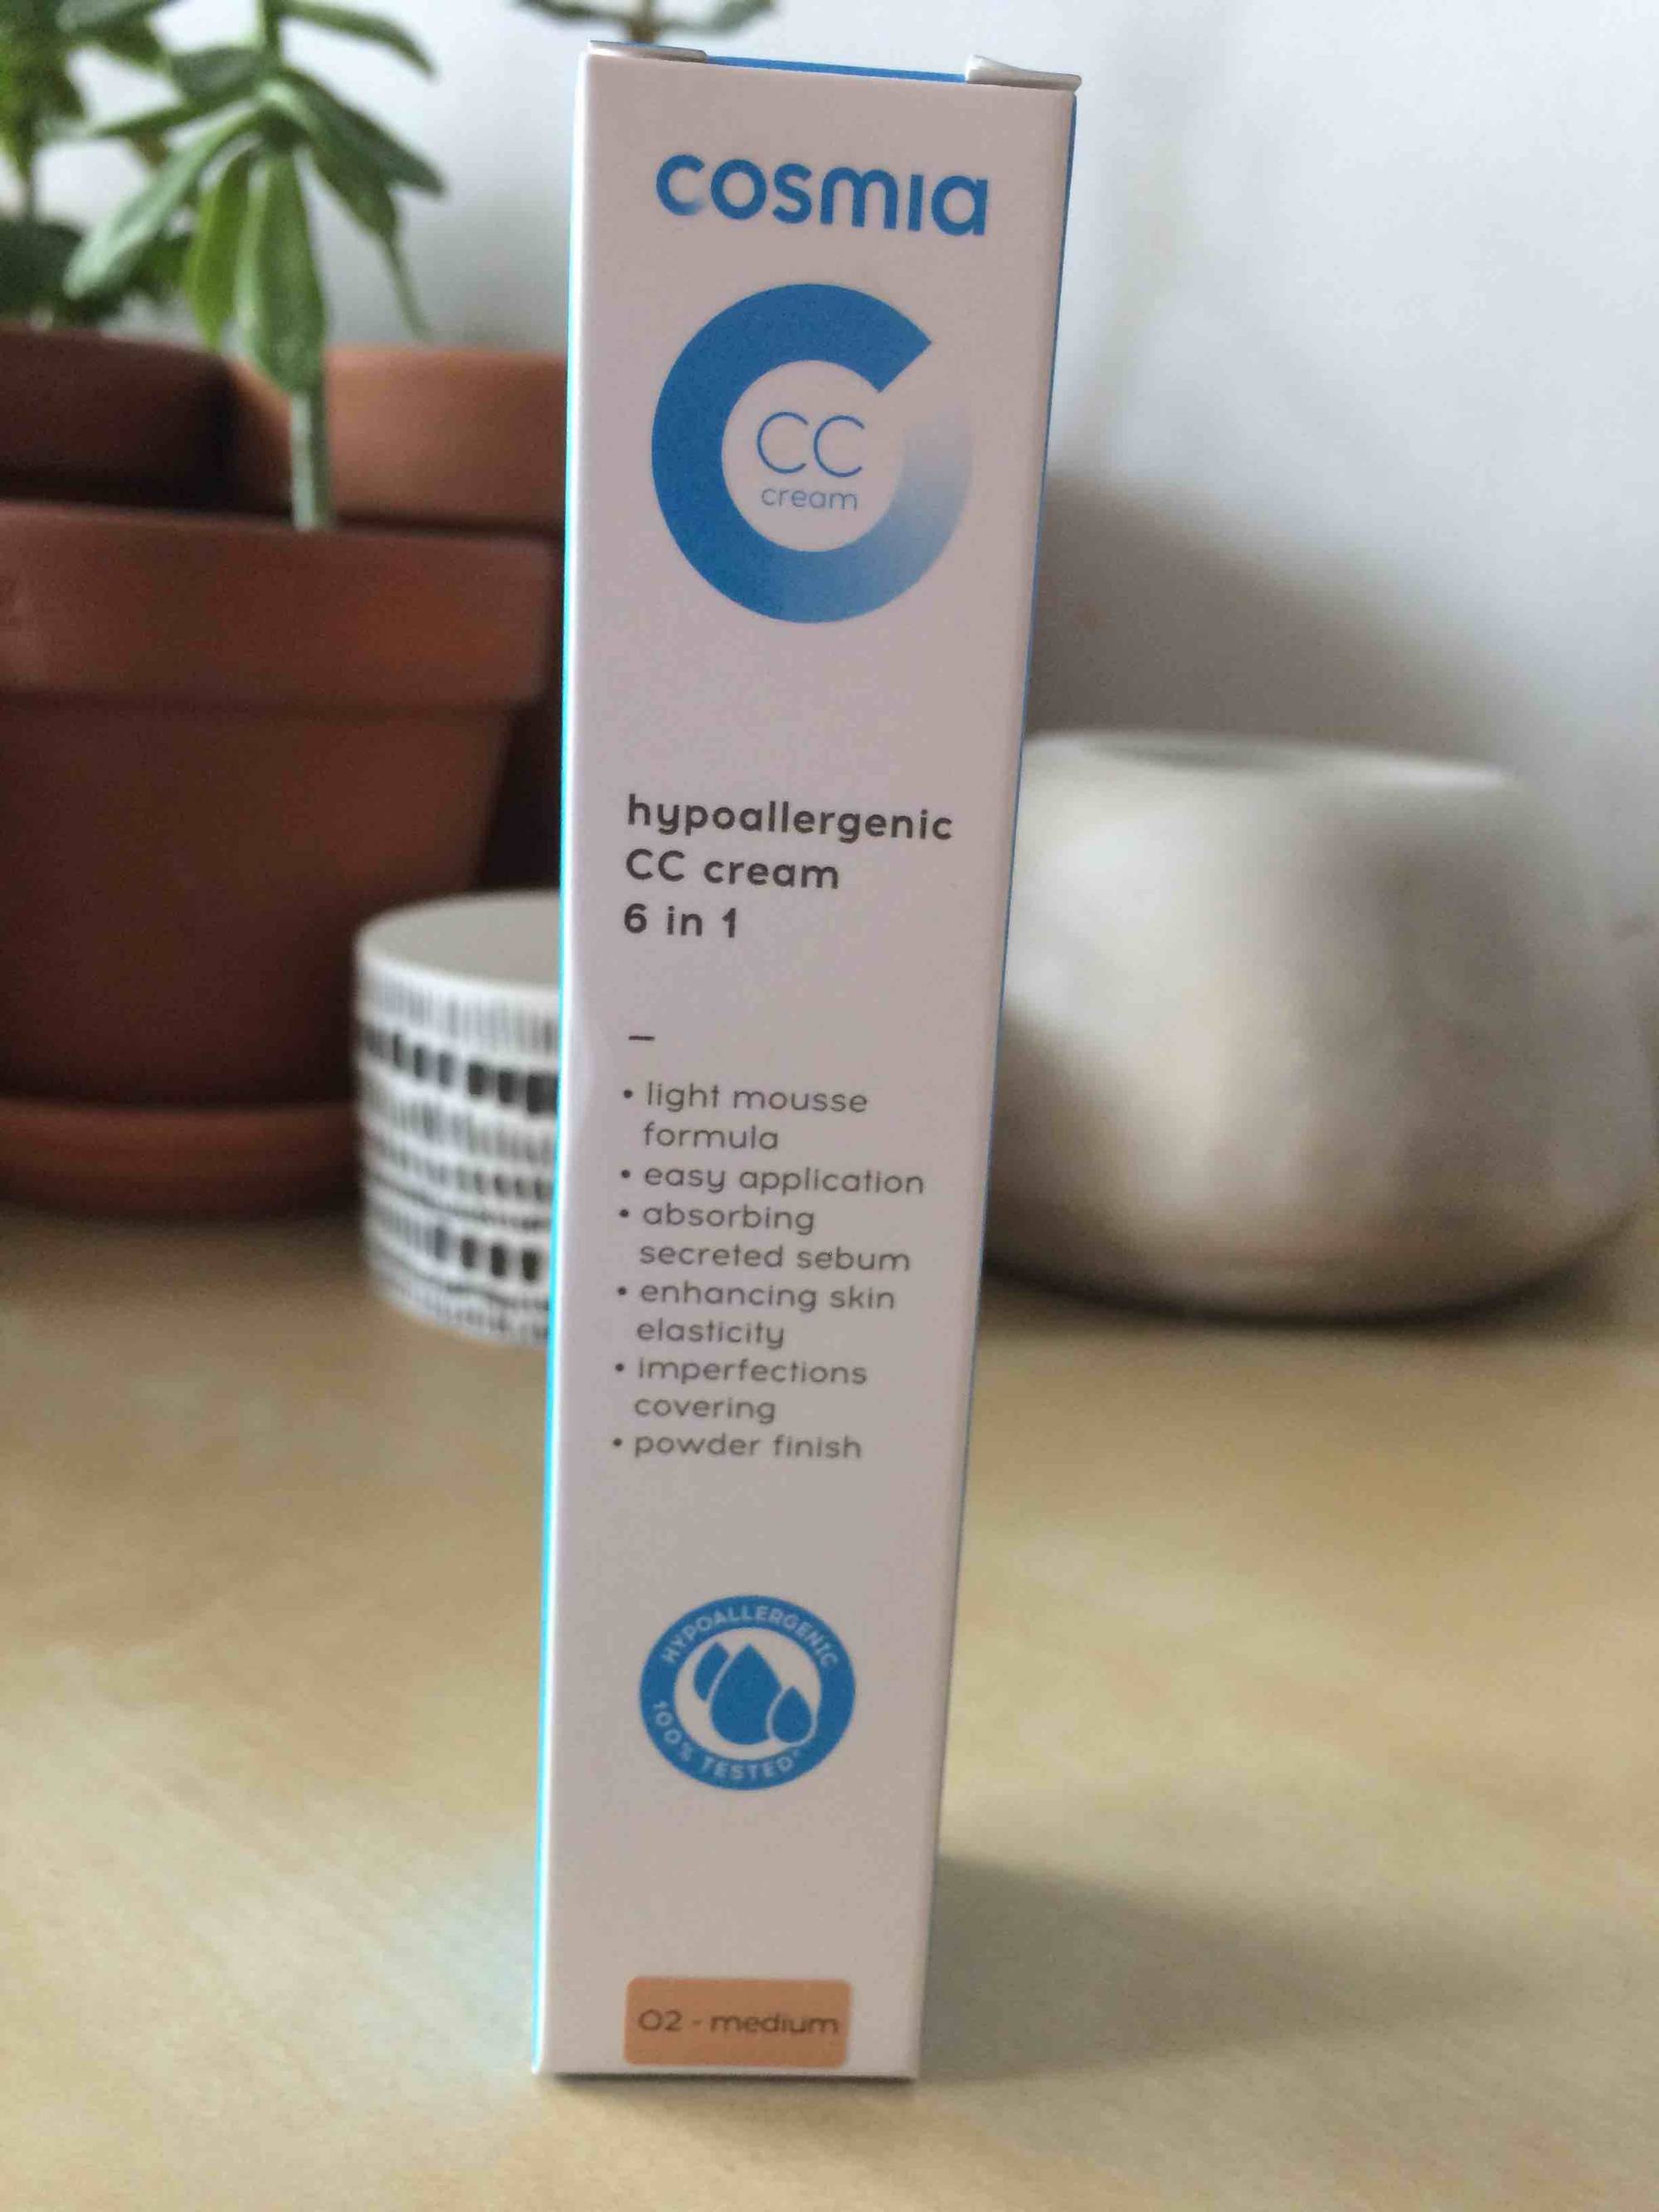 COSMIA - Hypoallergenic CC cream 6 in 1